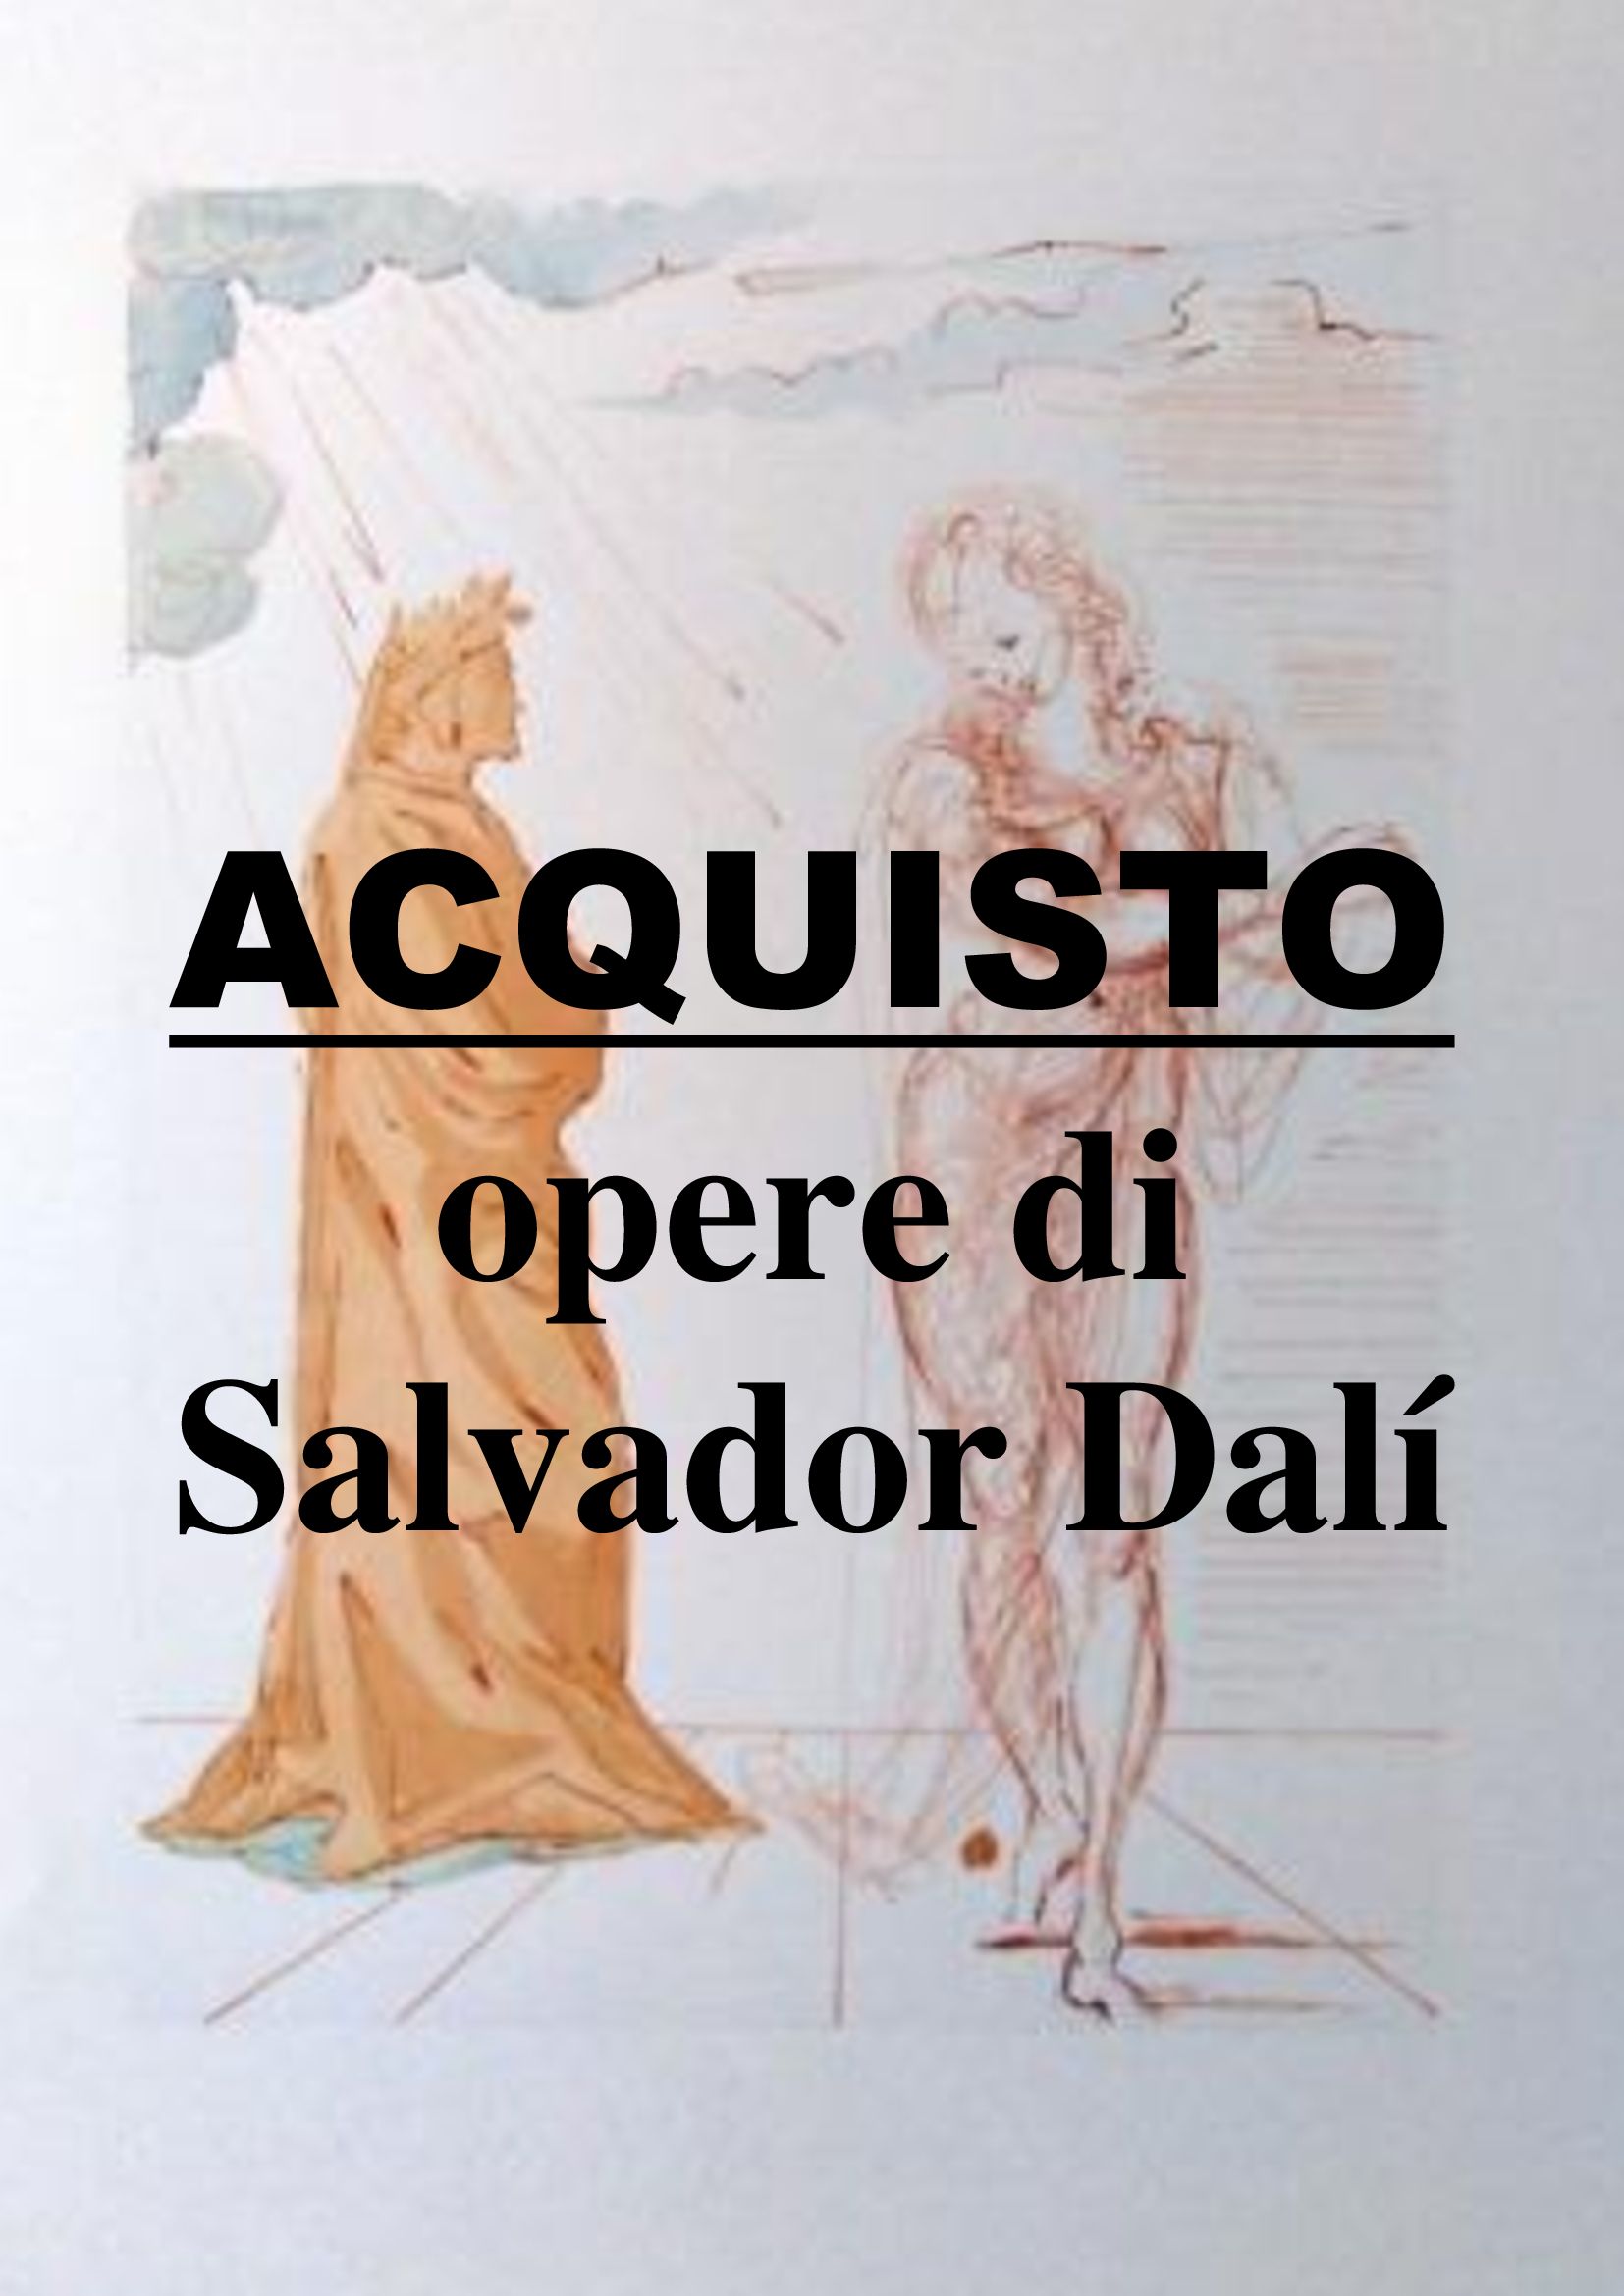 Salvador Dali: proponi la tua opera